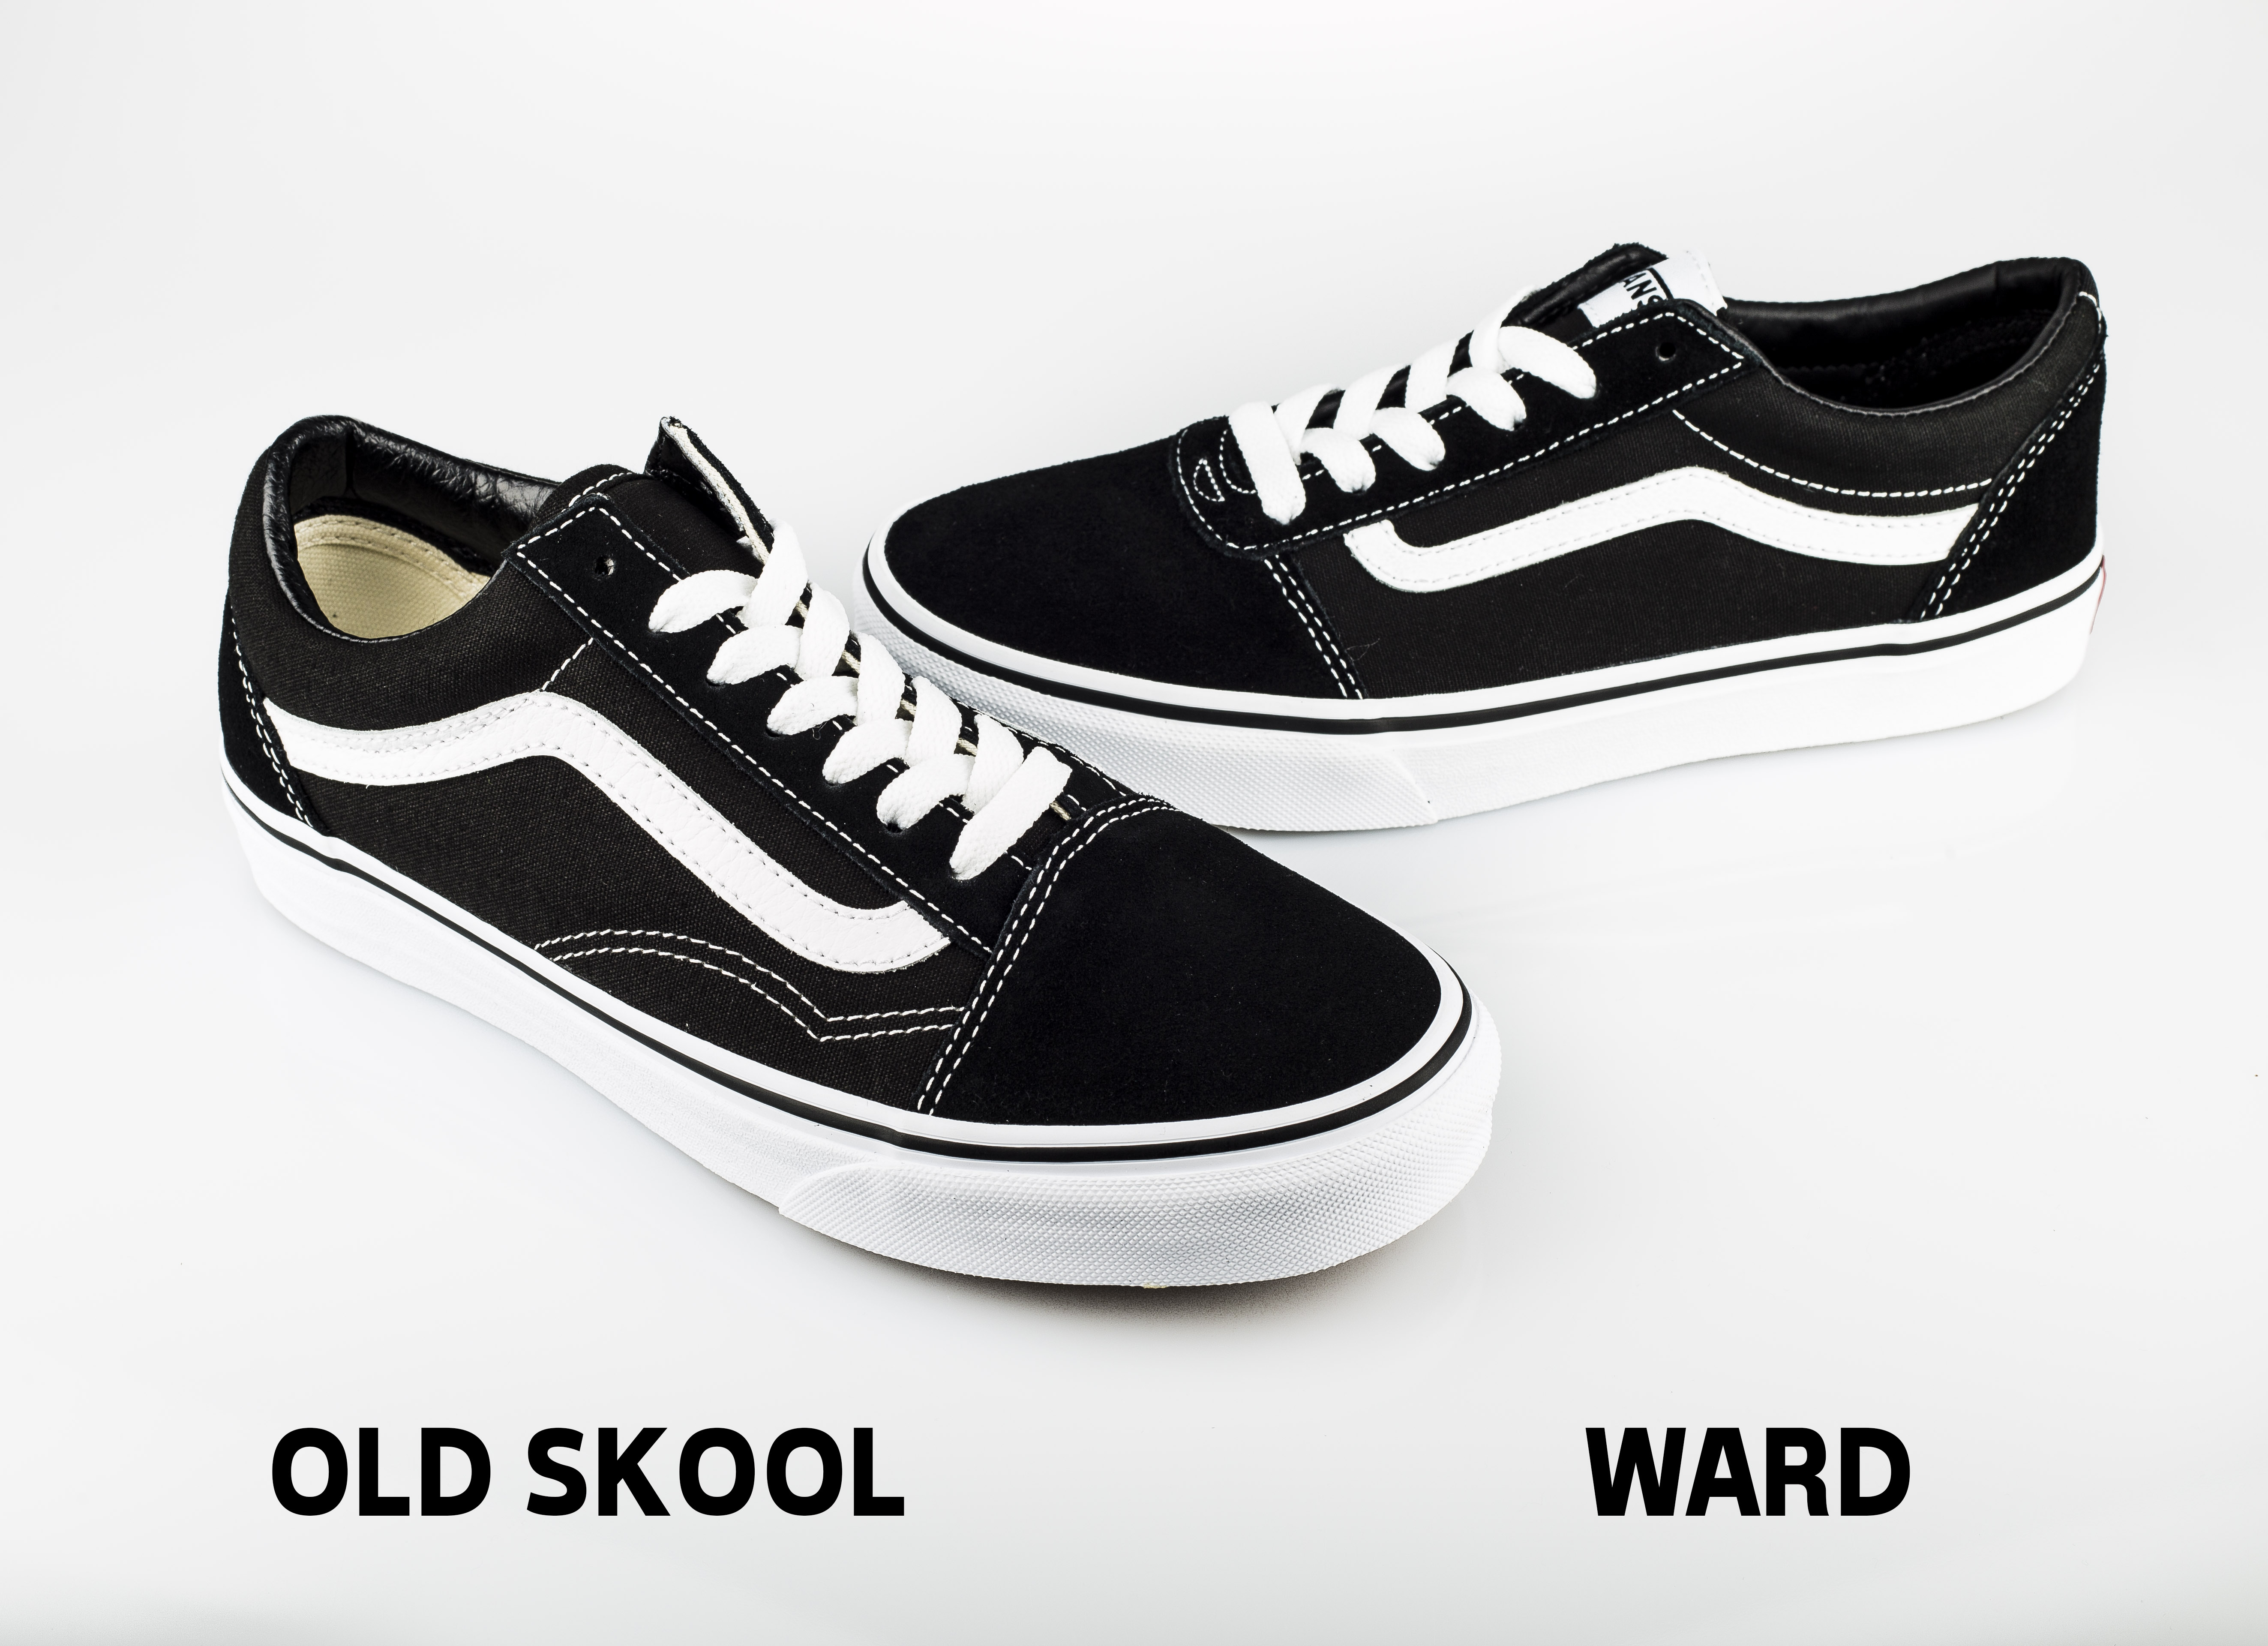 ward vs old skool